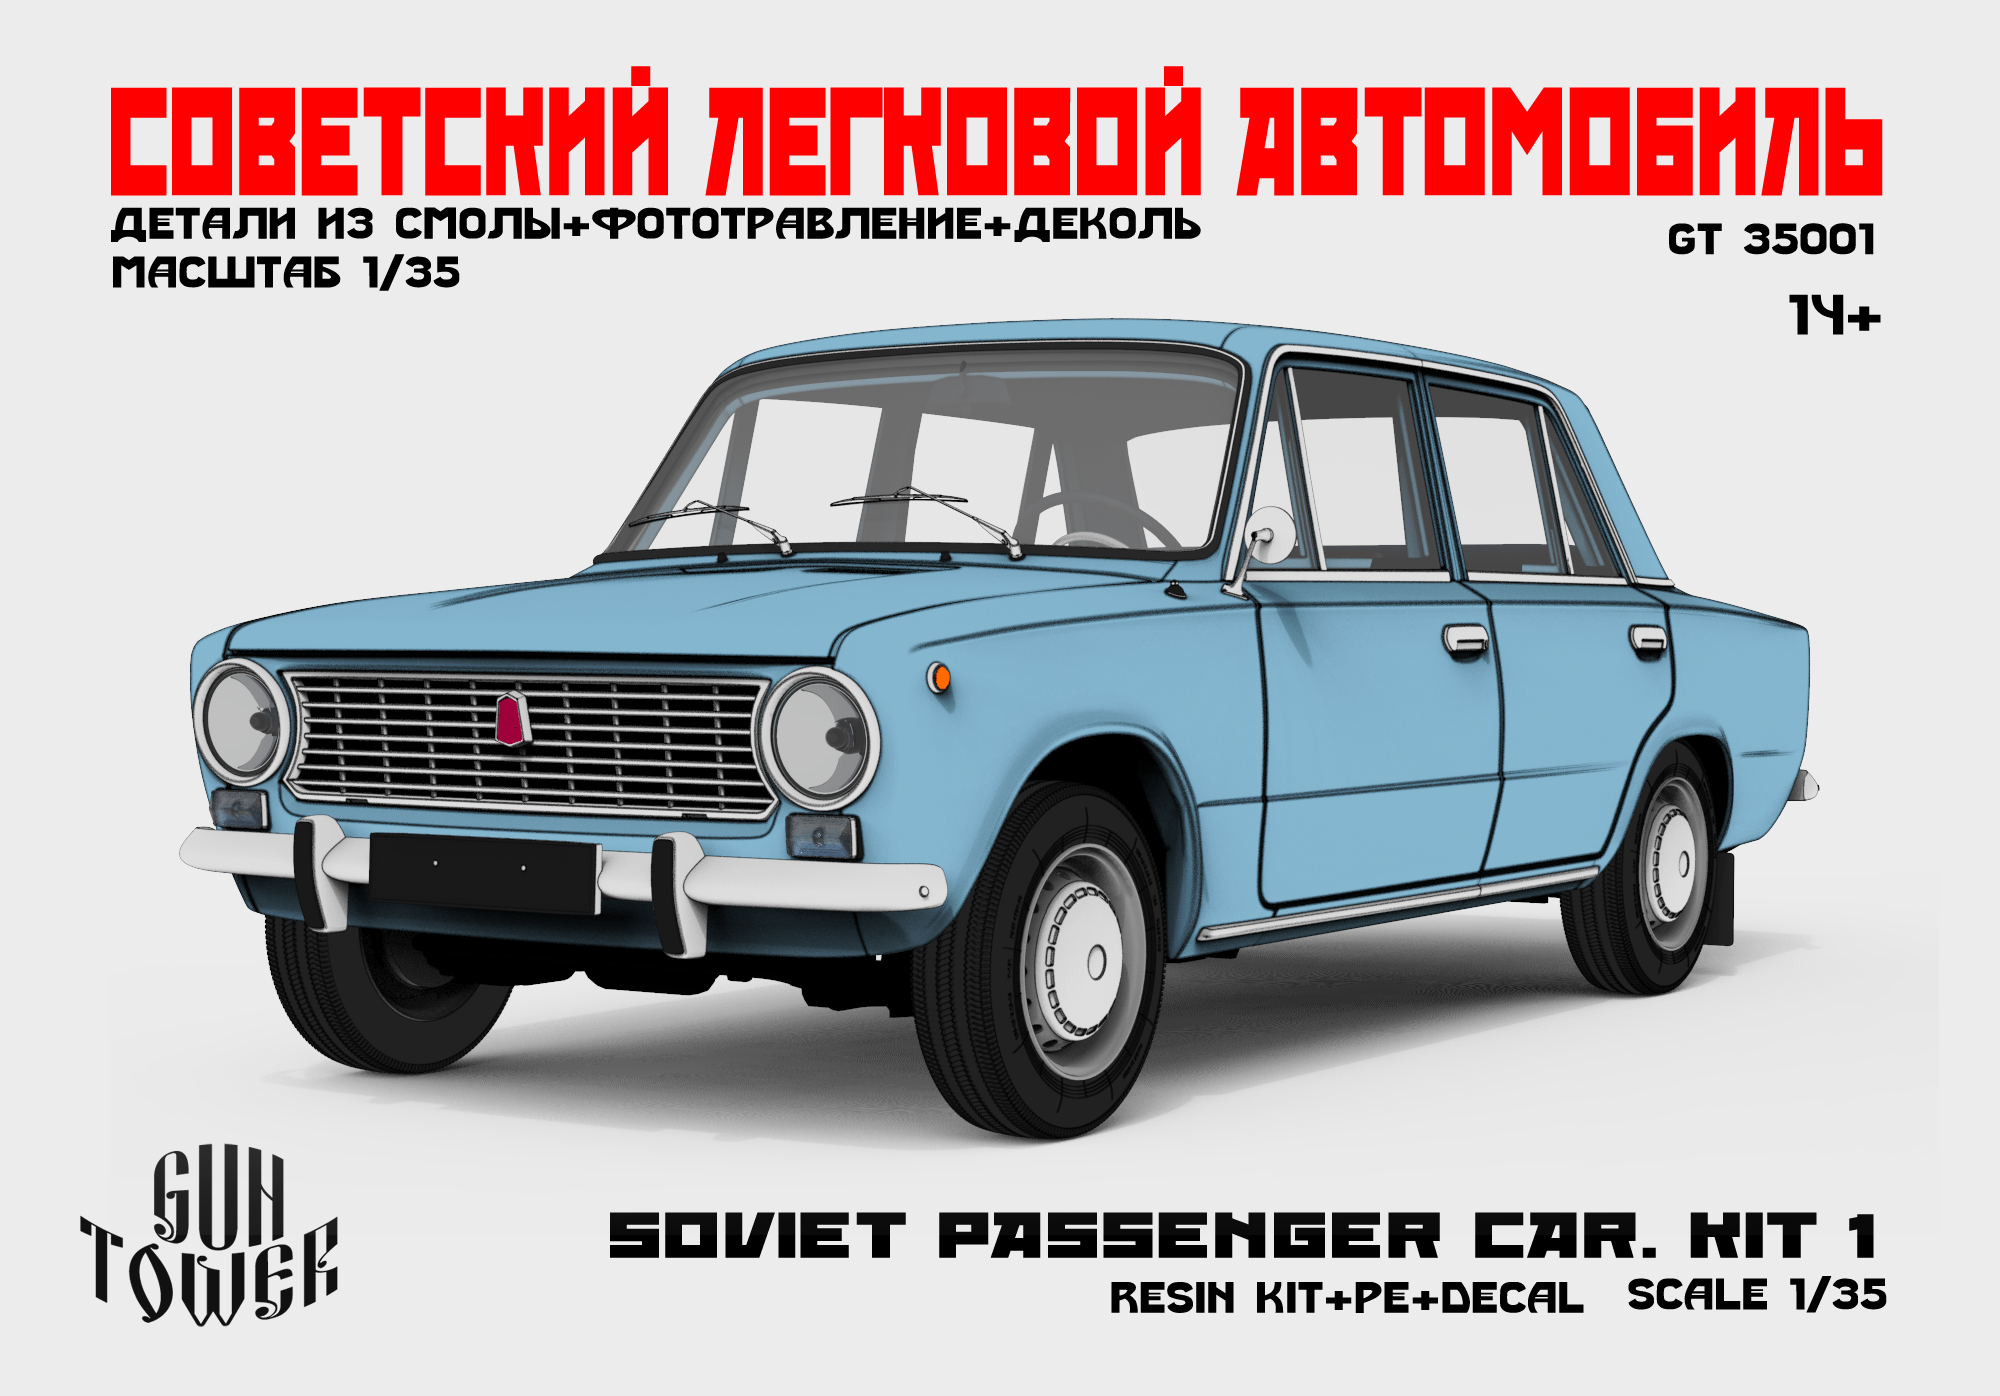 Soviet passenger car.Kit 1 (2101)